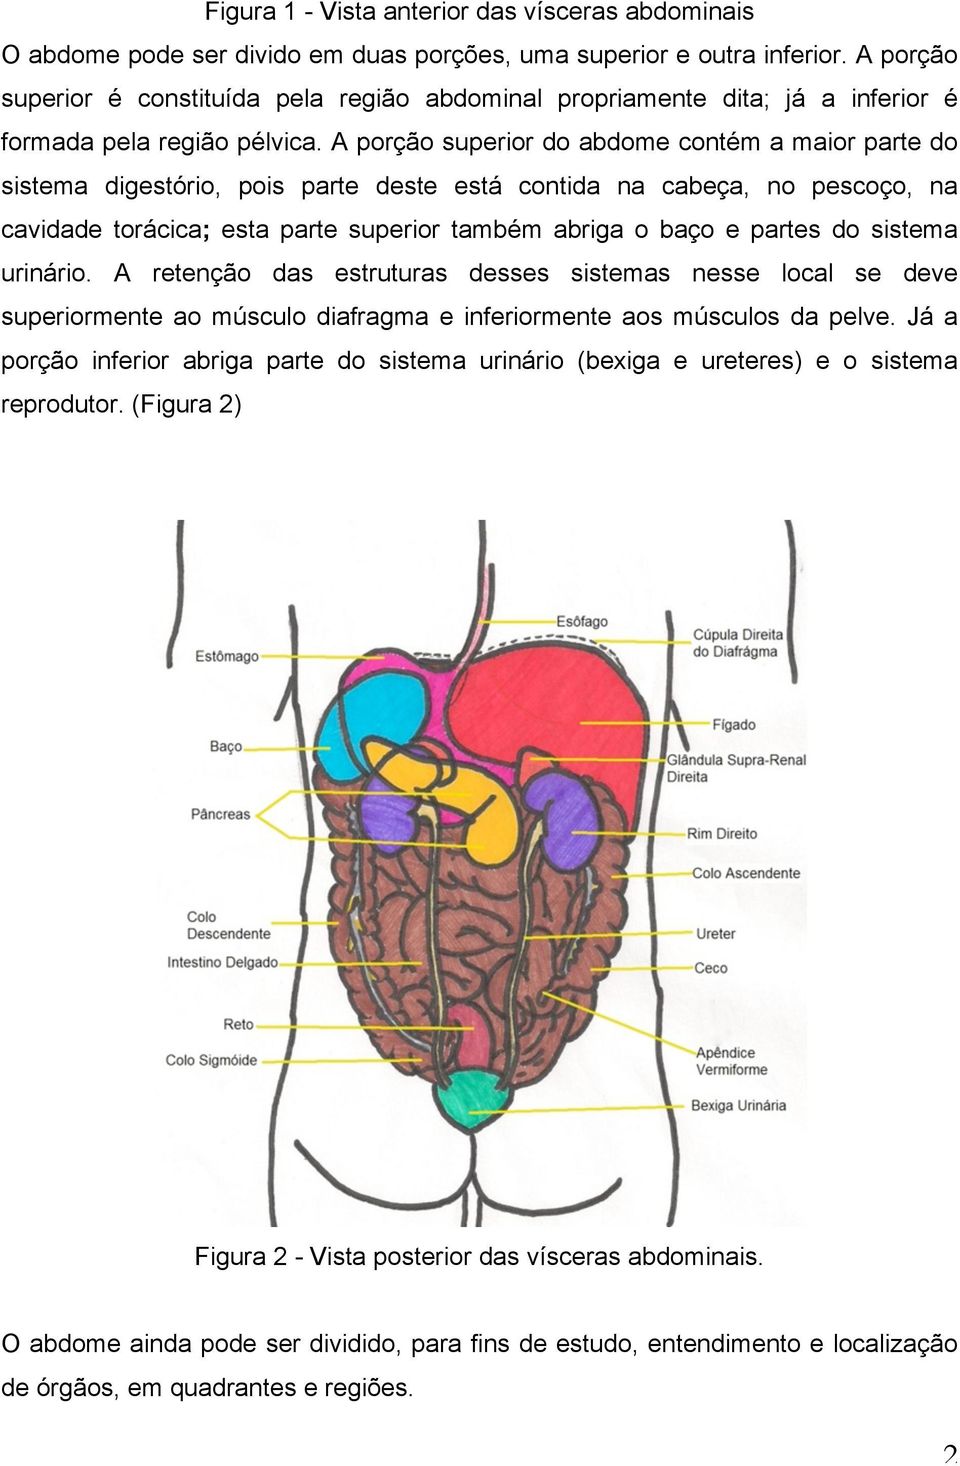 A porção superior do abdome contém a maior parte do sistema digestório, pois parte deste está contida na cabeça, no pescoço, na cavidade torácica; esta parte superior também abriga o baço e partes do